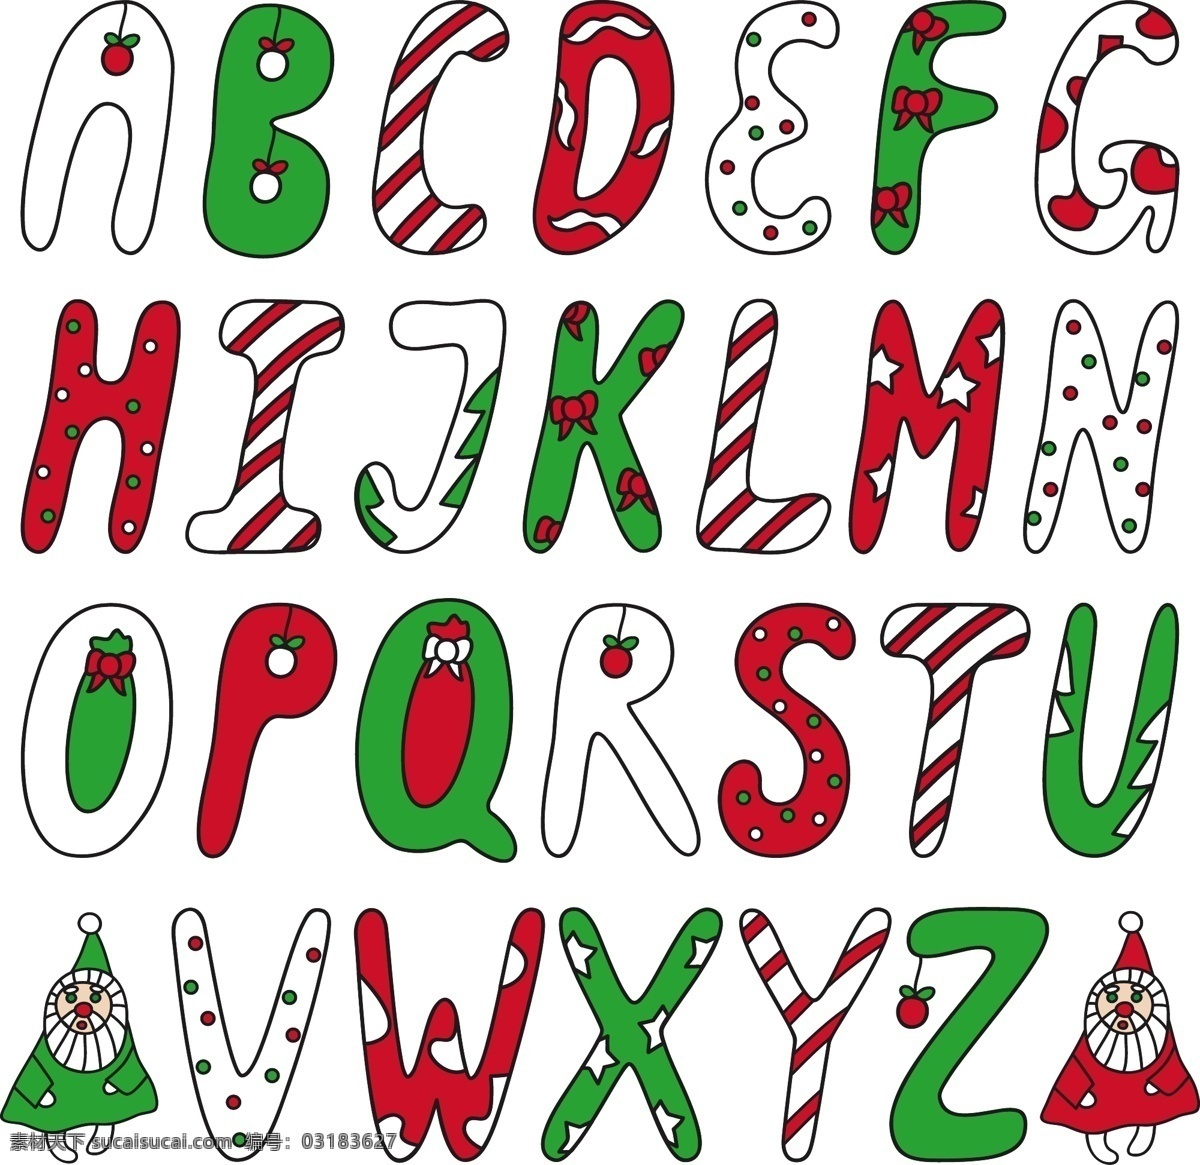 圣诞字母 字母设计 手绘字母 彩色字母 26个英文字 大小写 字母标识 拼音 创意字母 字母 英文 英文字母 26个字母 立体字母 卡通字母 动物字母 数字 标点 符号 标点符号 卡通数字 立体数字 阿拉伯数字 平面素材